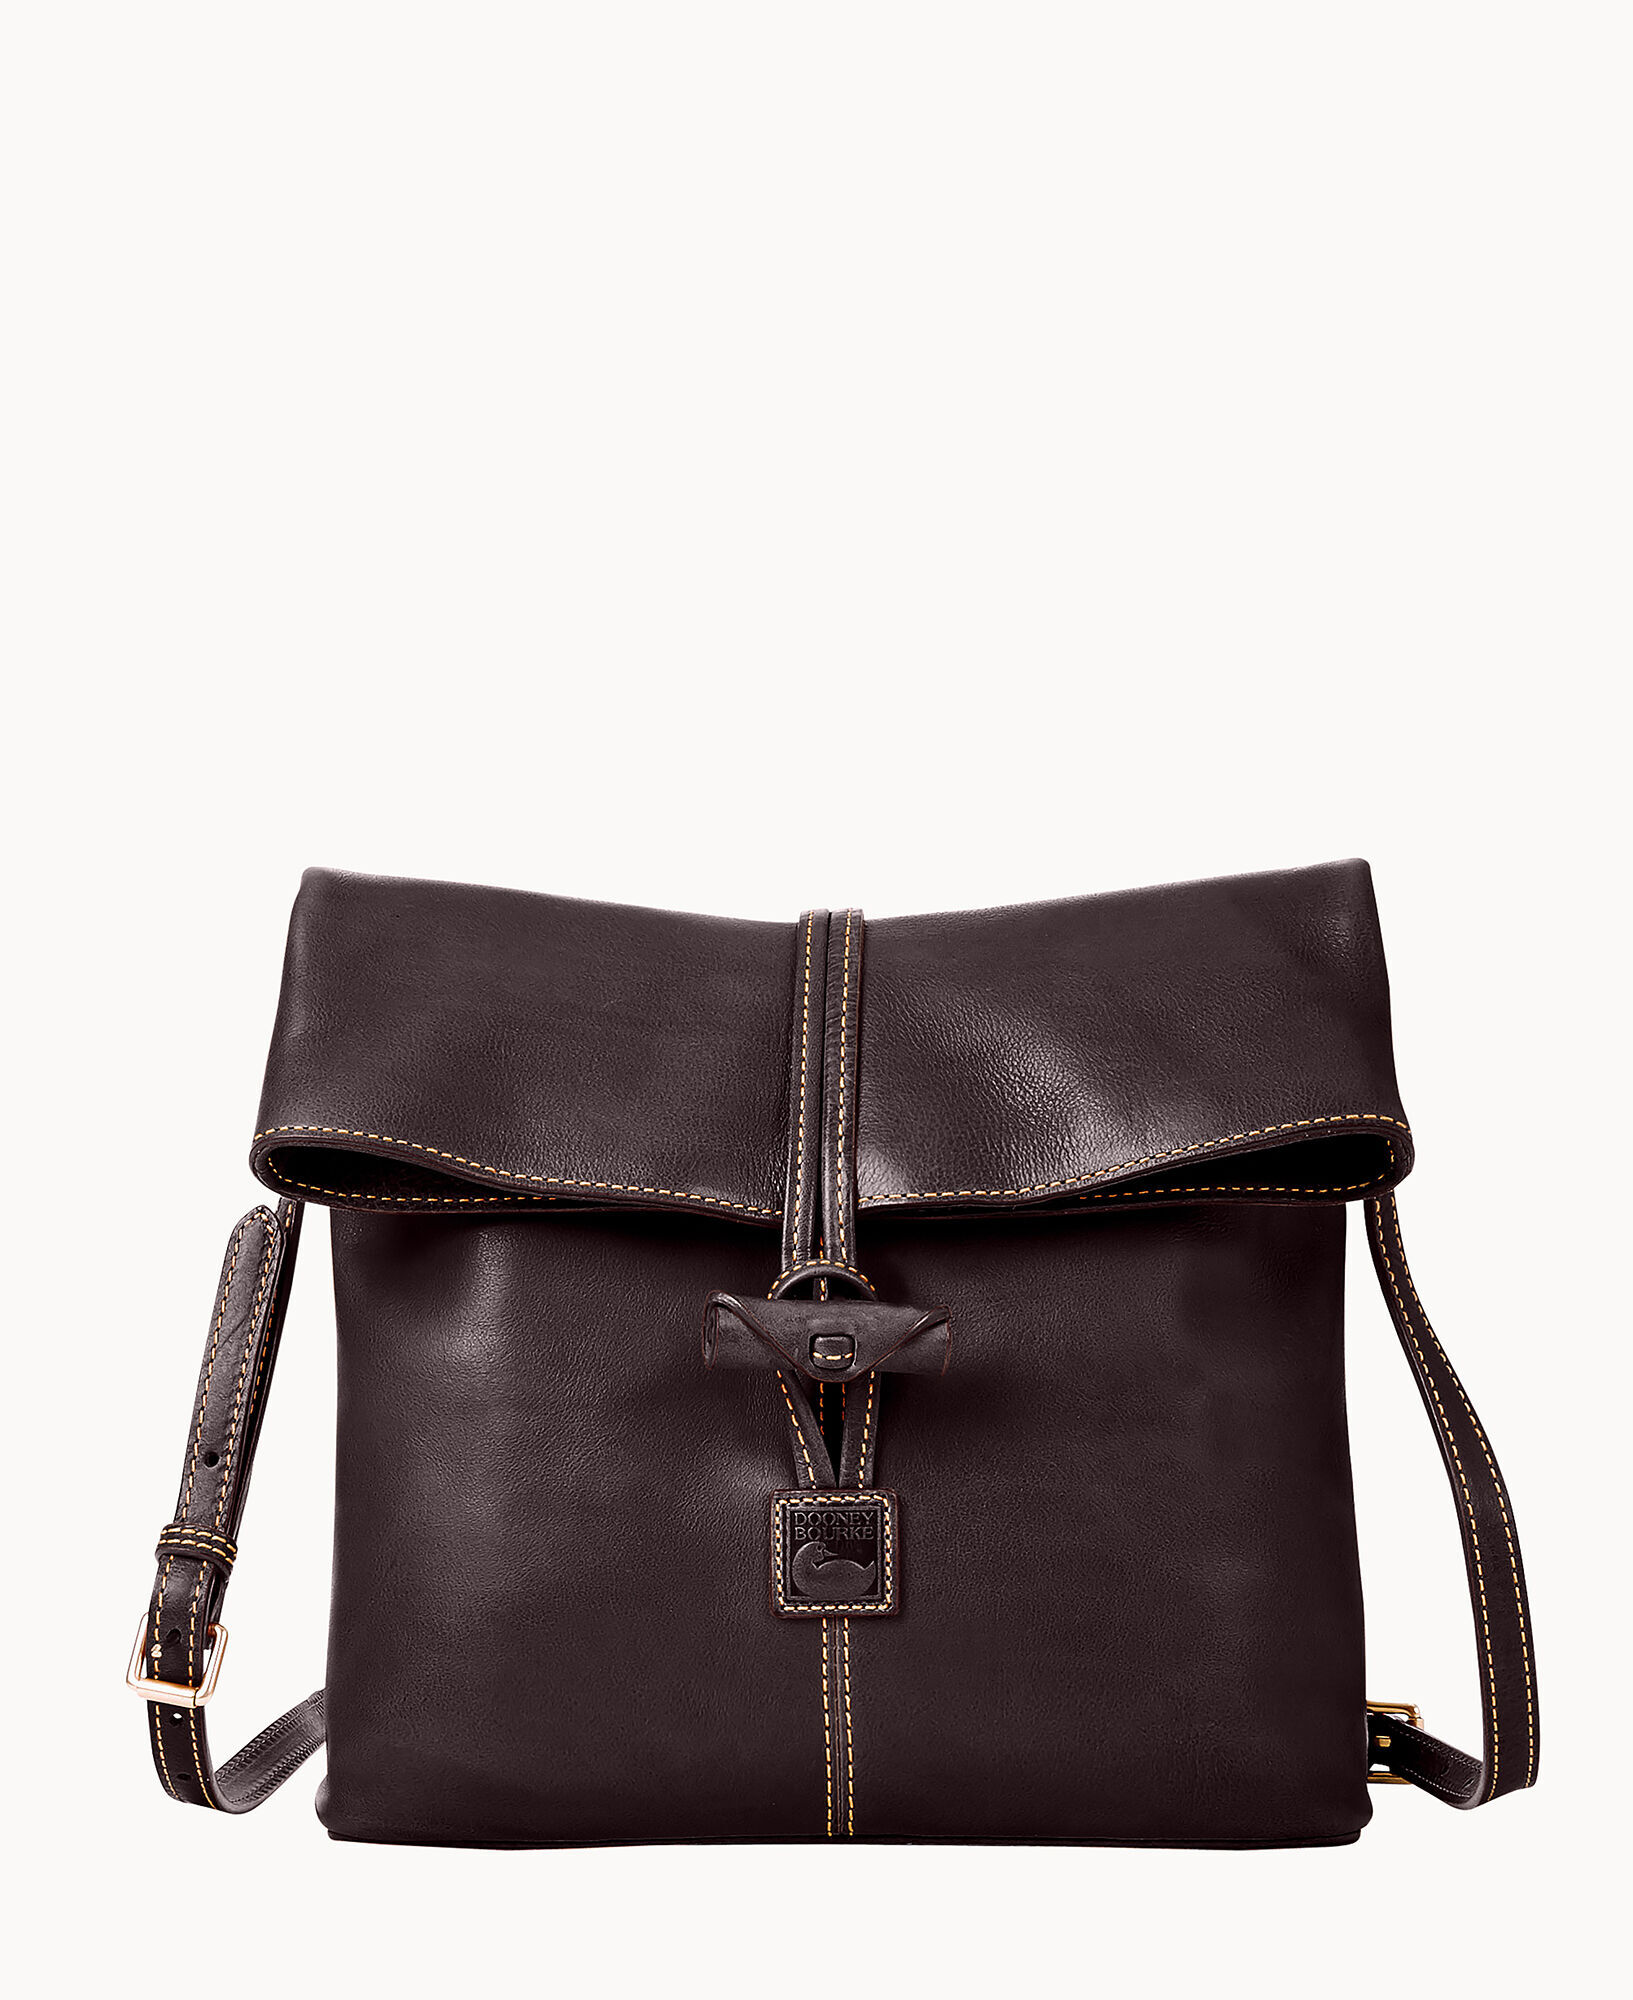 Prada Saffiano Pattina Crossbody Bag - Neutrals Crossbody Bags, Handbags -  PRA414937